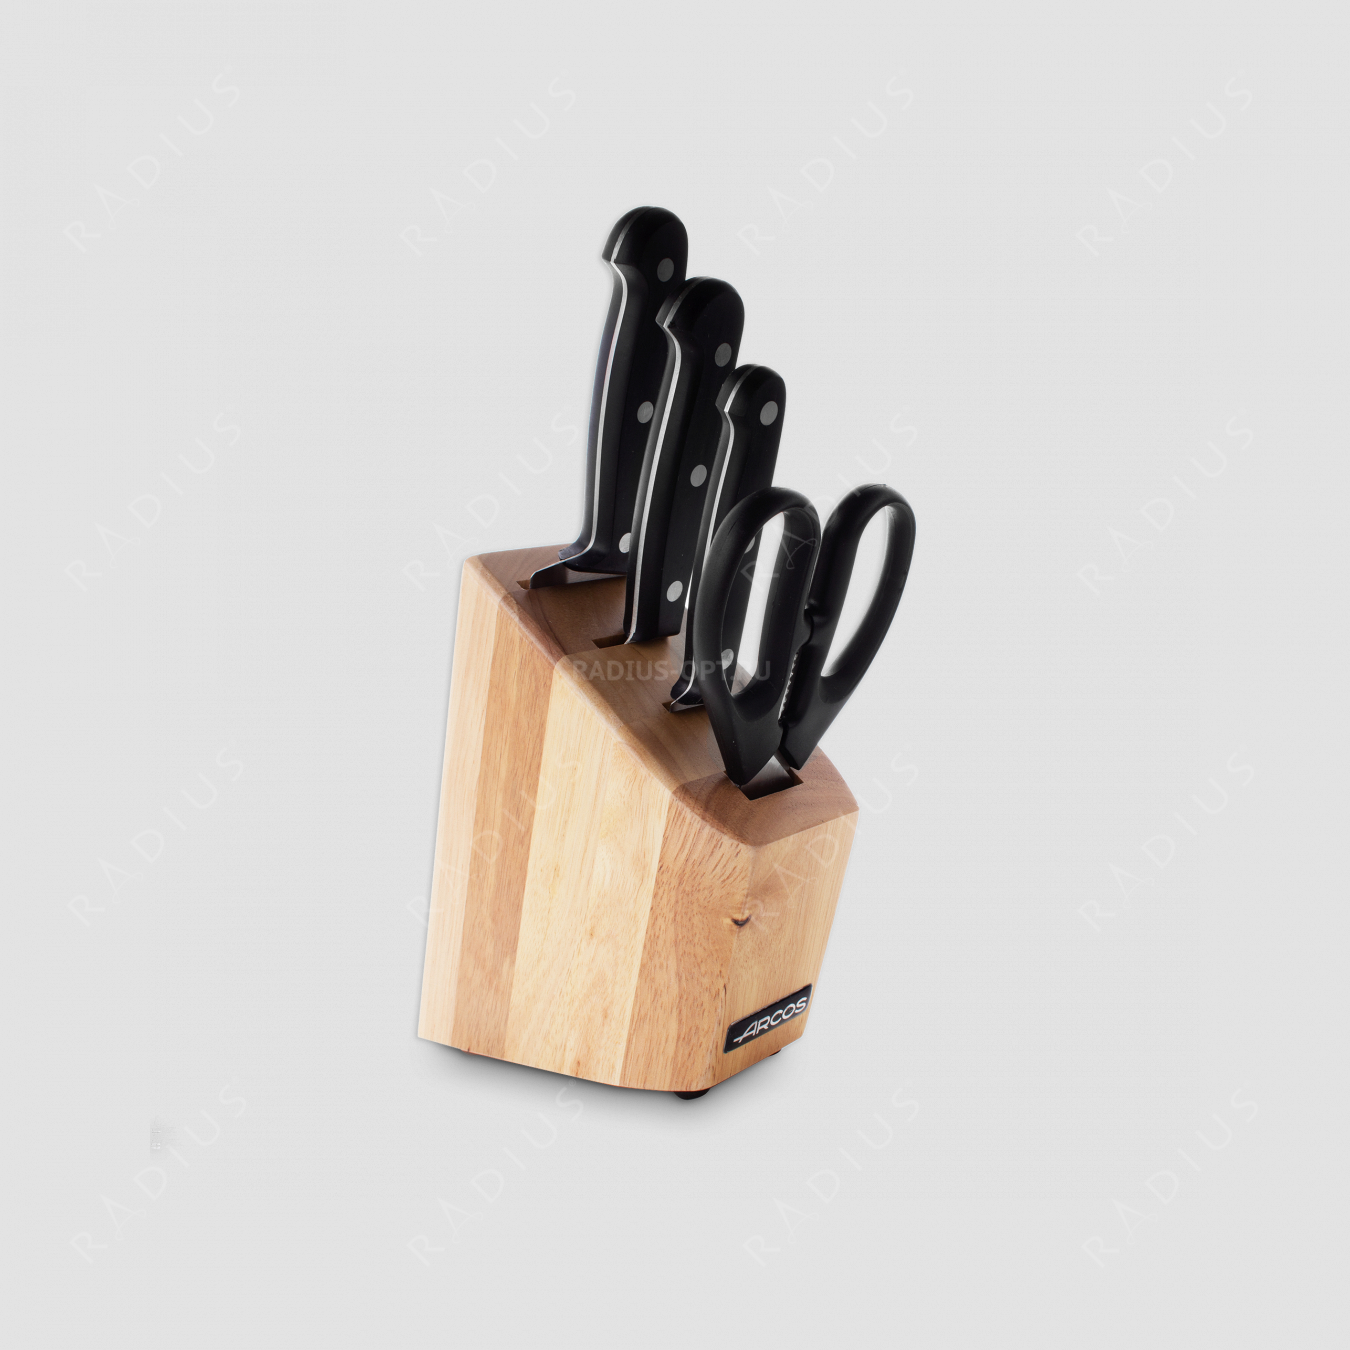 Набор из 3-х кухонных ножей с ножницами в деревянной подставке, серия Universal, ARCOS, Испания